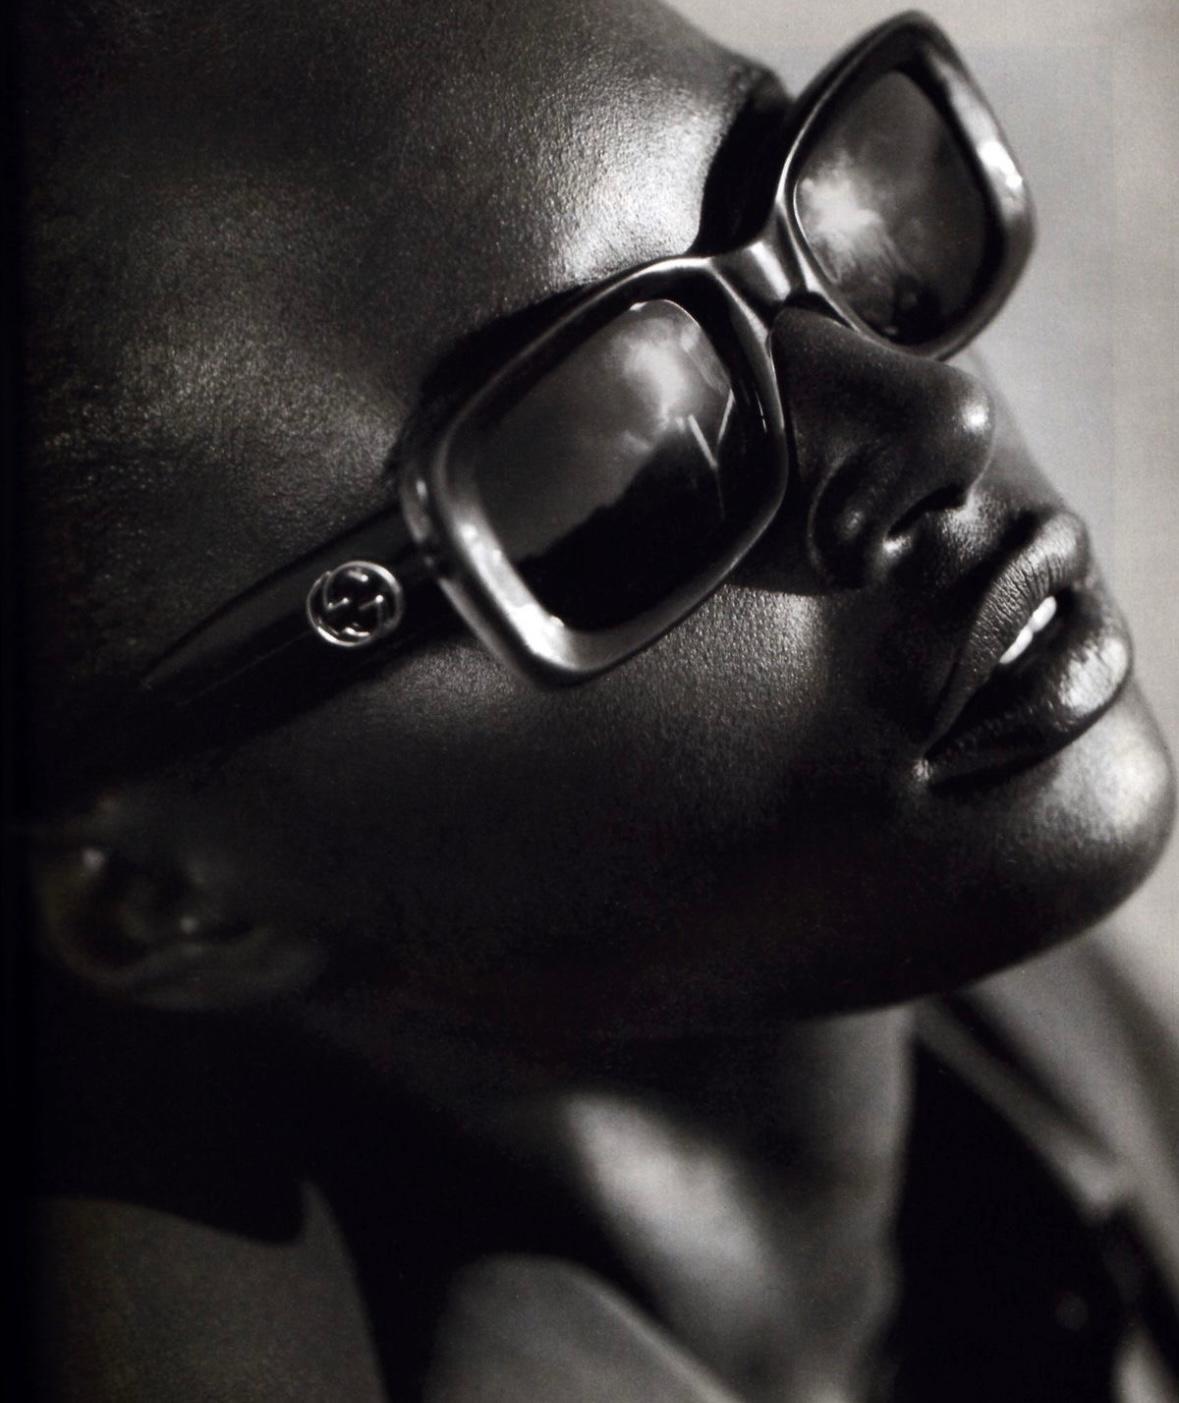 Diese schicke ovale Gucci-Sonnenbrille in Blau-Metallic aus der Frühjahr/Sommer-Kollektion 1997, entworfen von Tom Ford, erschien in der Werbekampagne der Saison für Kiara Kabukuru, die von Mario Testino fotografiert wurde. Die Brille hat hellblaue